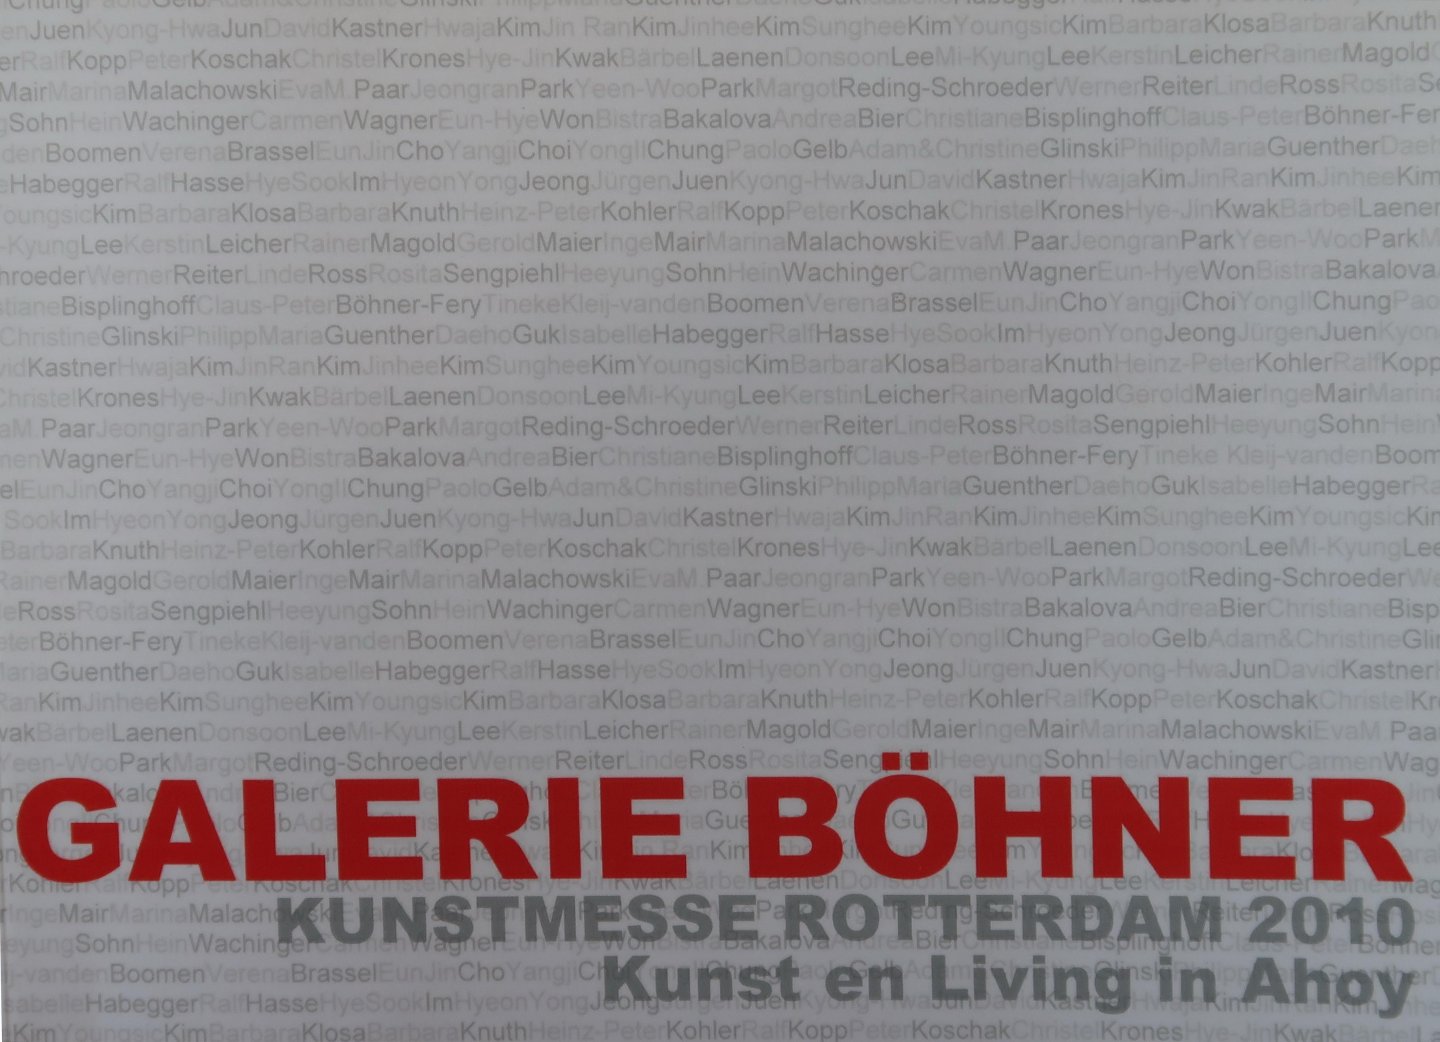 Böhner Fery, Dr. Claus-Peter | Gerold Maier - Galerie Böhner | Kunstmesse Rotterdam 2010 | Kunst en Living in Ahoy